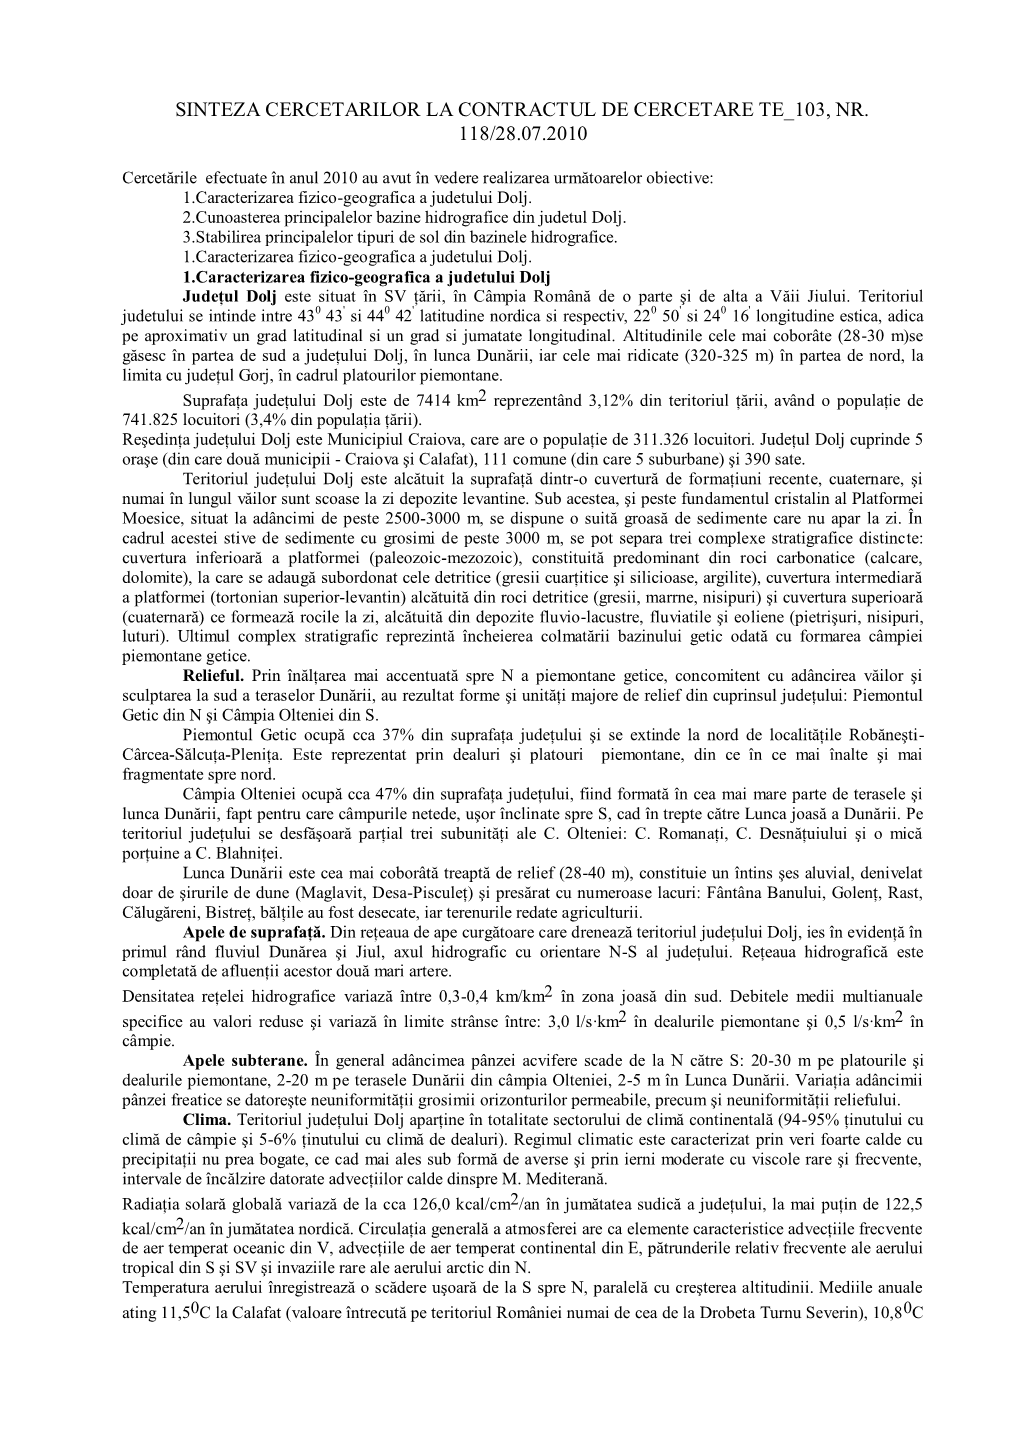 Sinteza Cercetarilor La Contractul De Cercetare Te 103, Nr. 118/28.07.2010